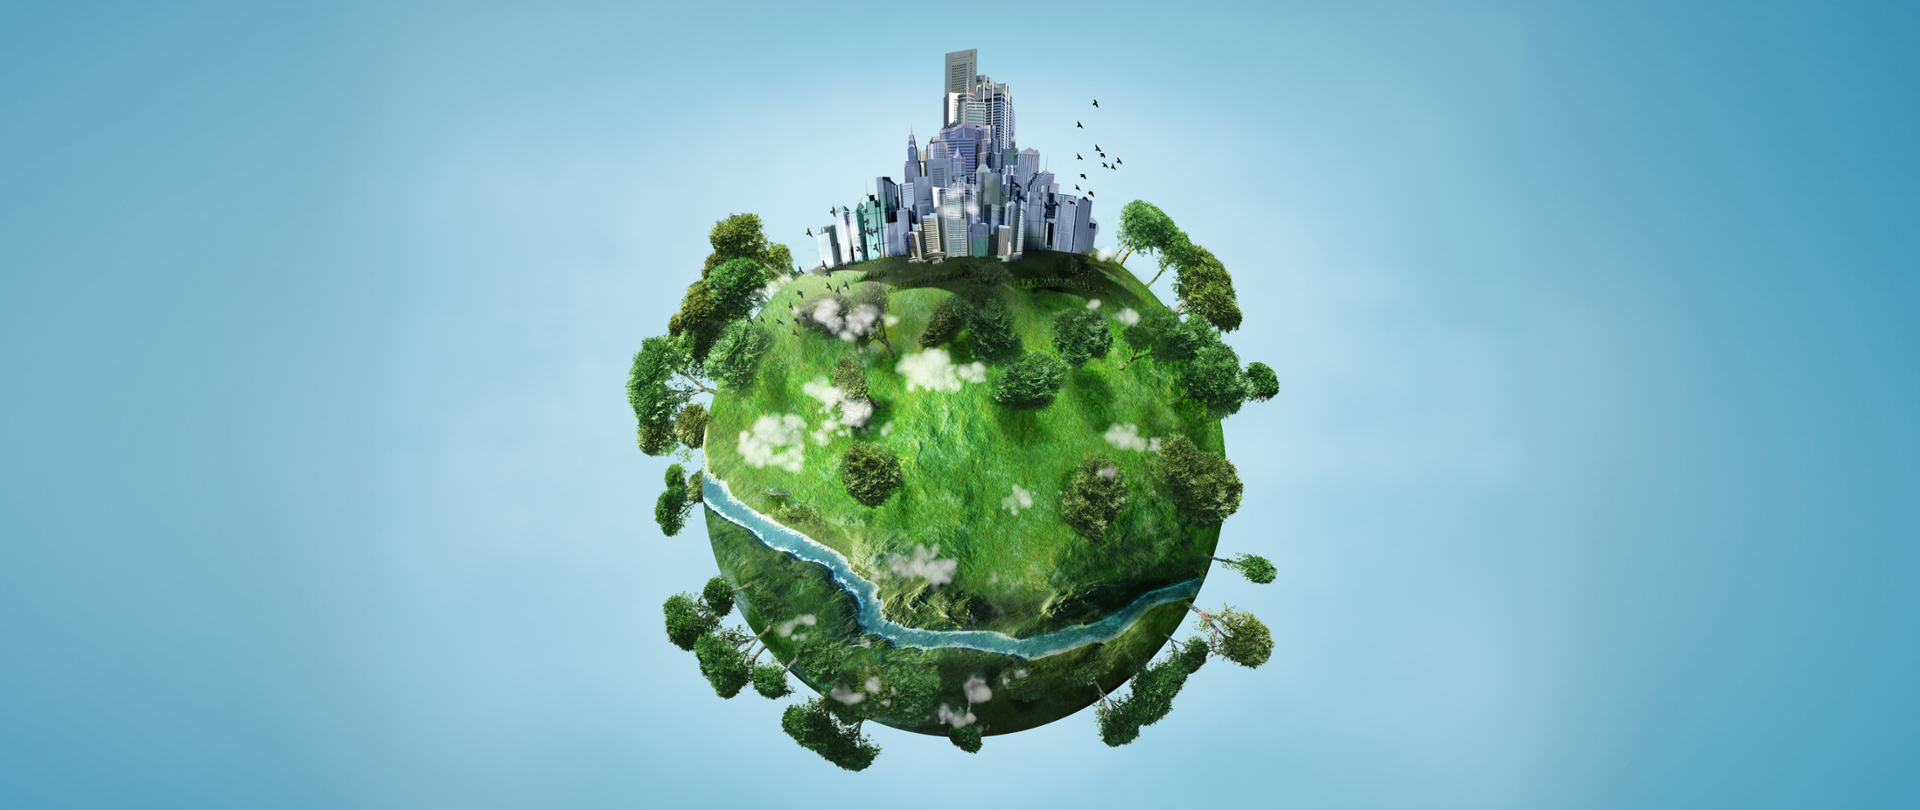 Wizualizacja kuli ziemskiej z miastem, drzewami i rzeką.